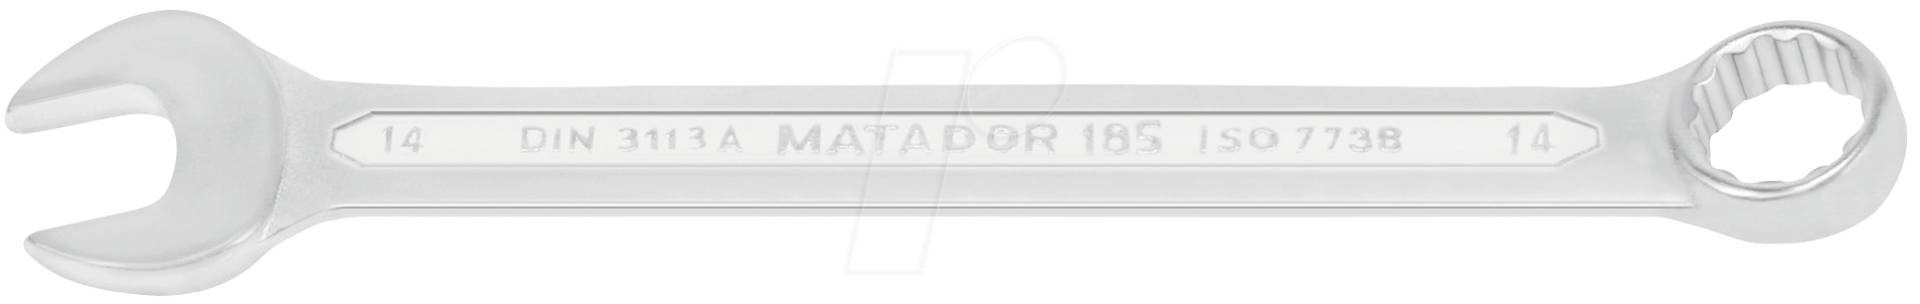 MAT 0185 9100 - Ringmaulschlüsselsatz, SW 6-19, 10-teilig, DIN 3113 A von Matador